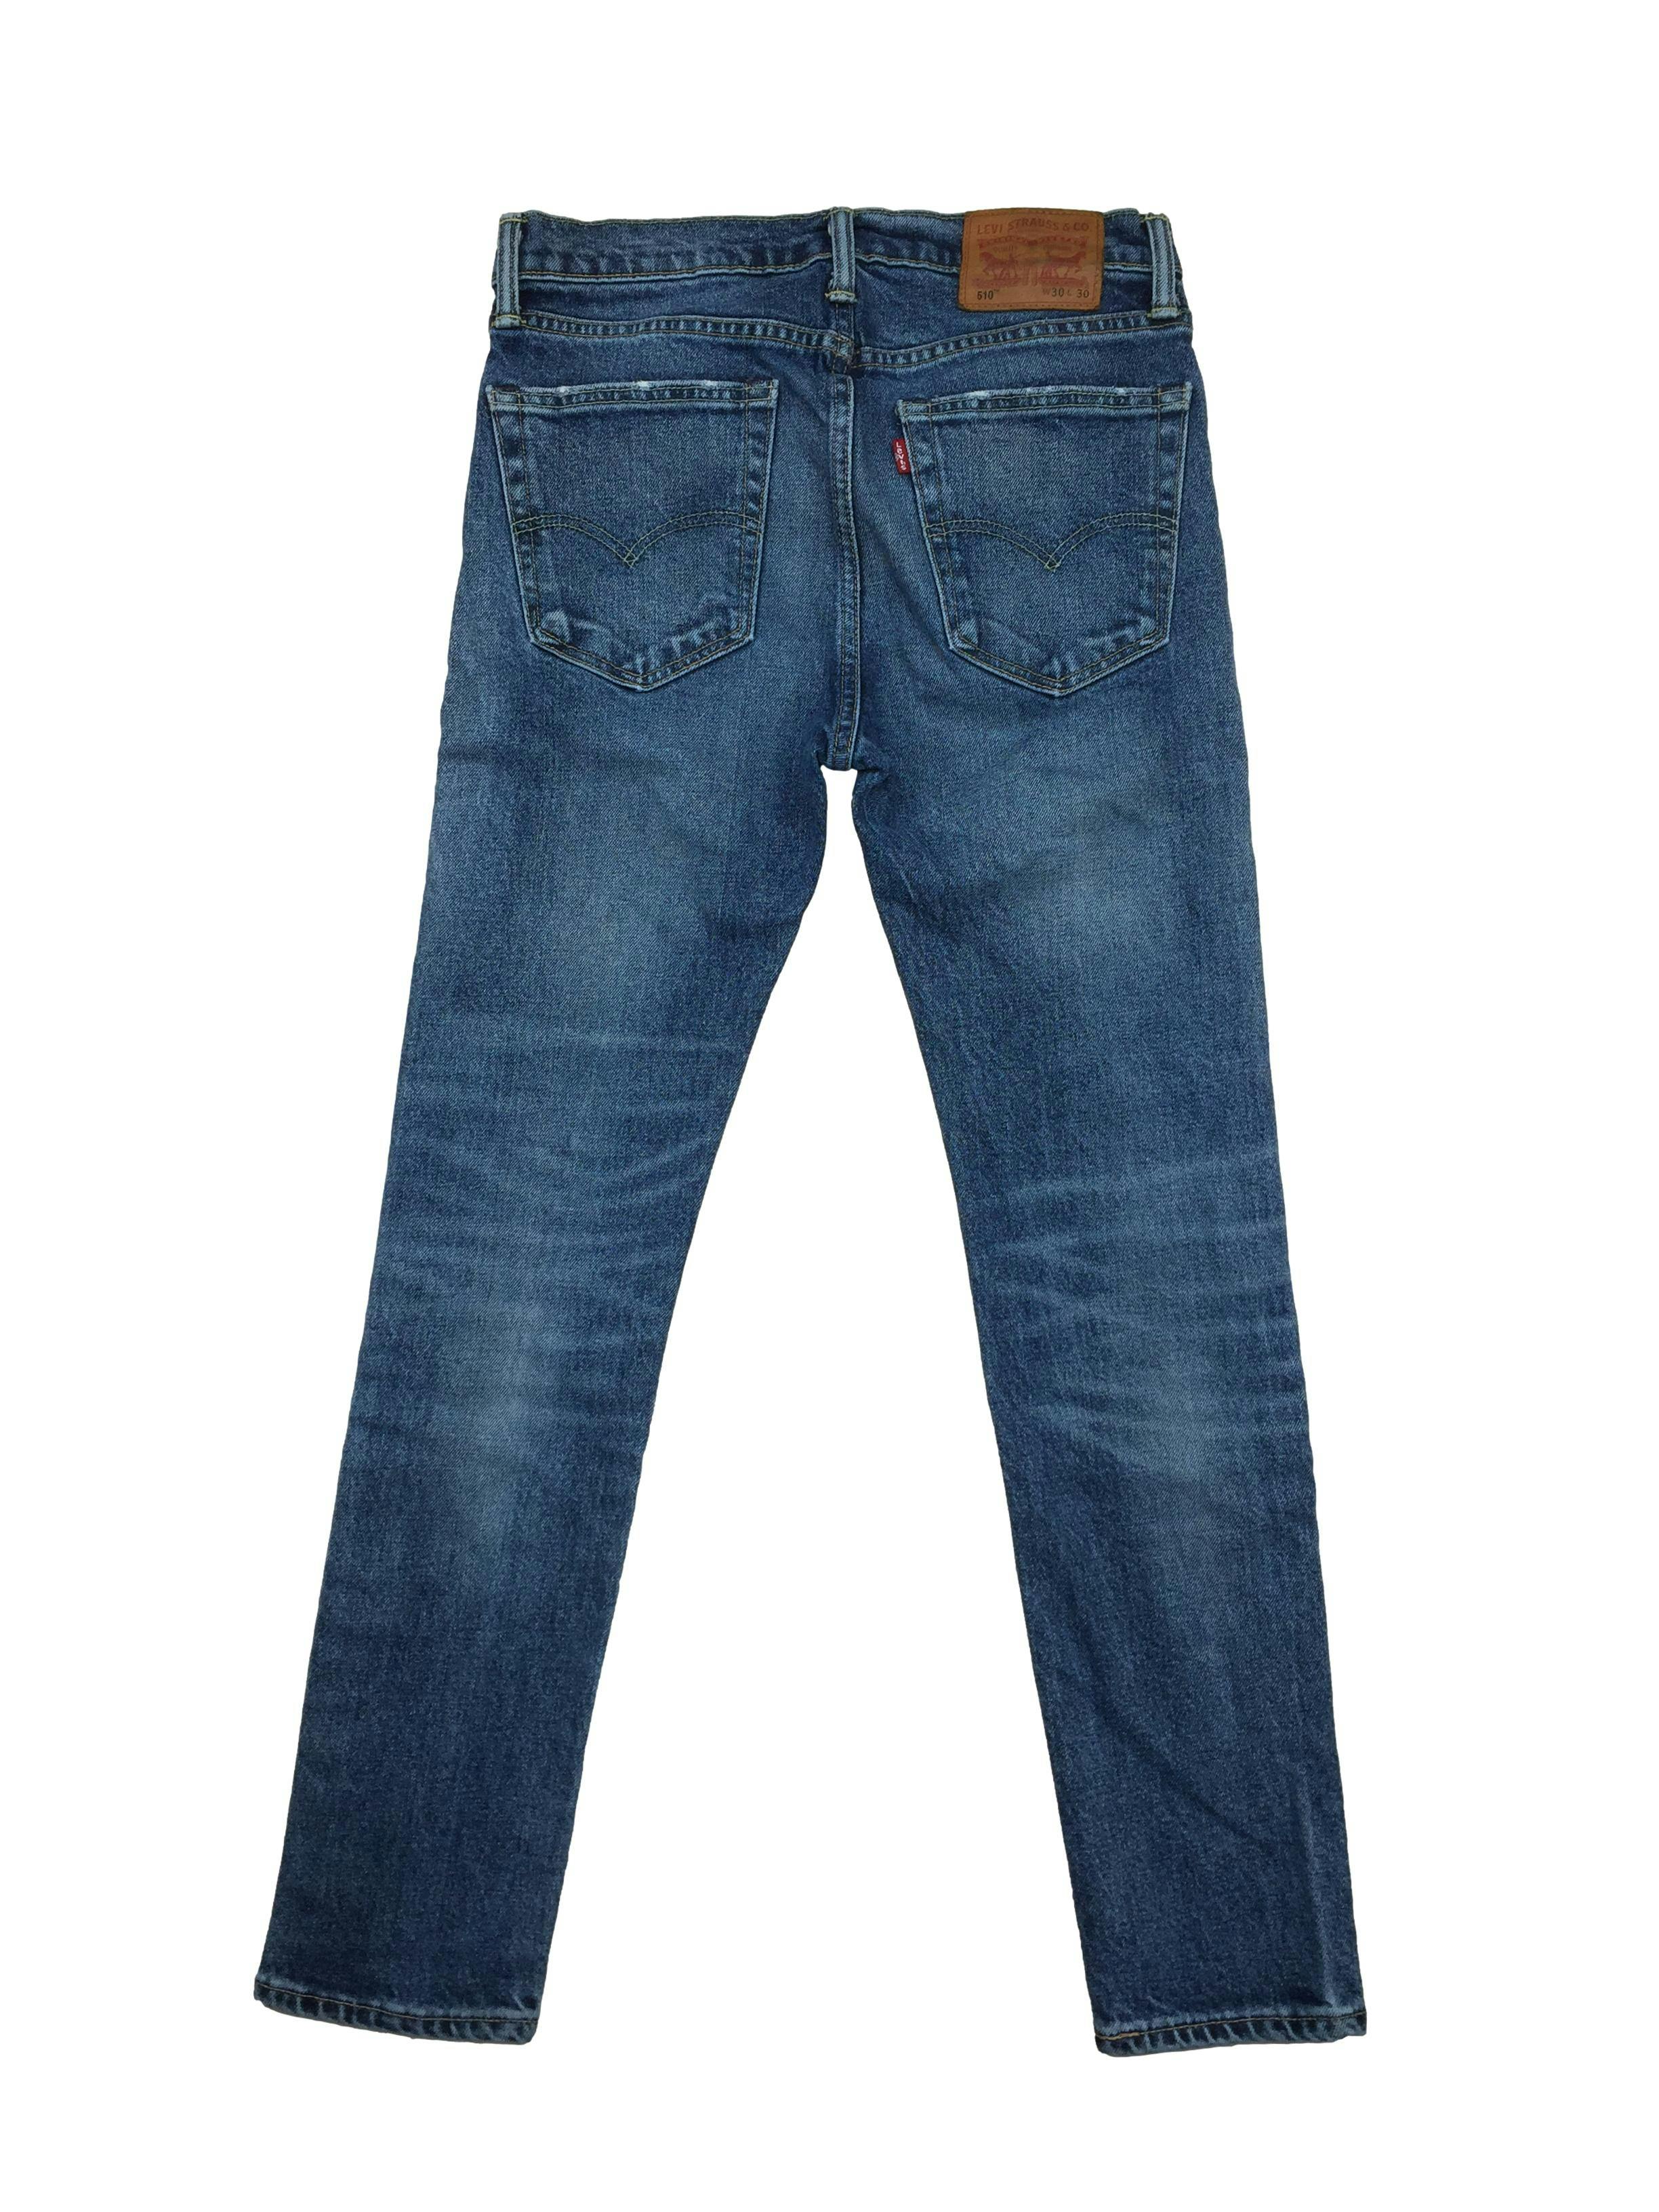 Jean Levi´s  azul claro focalizado, 98% algodón, skinny. Cintura 75cm Tiro 27cm Largo 97cm 